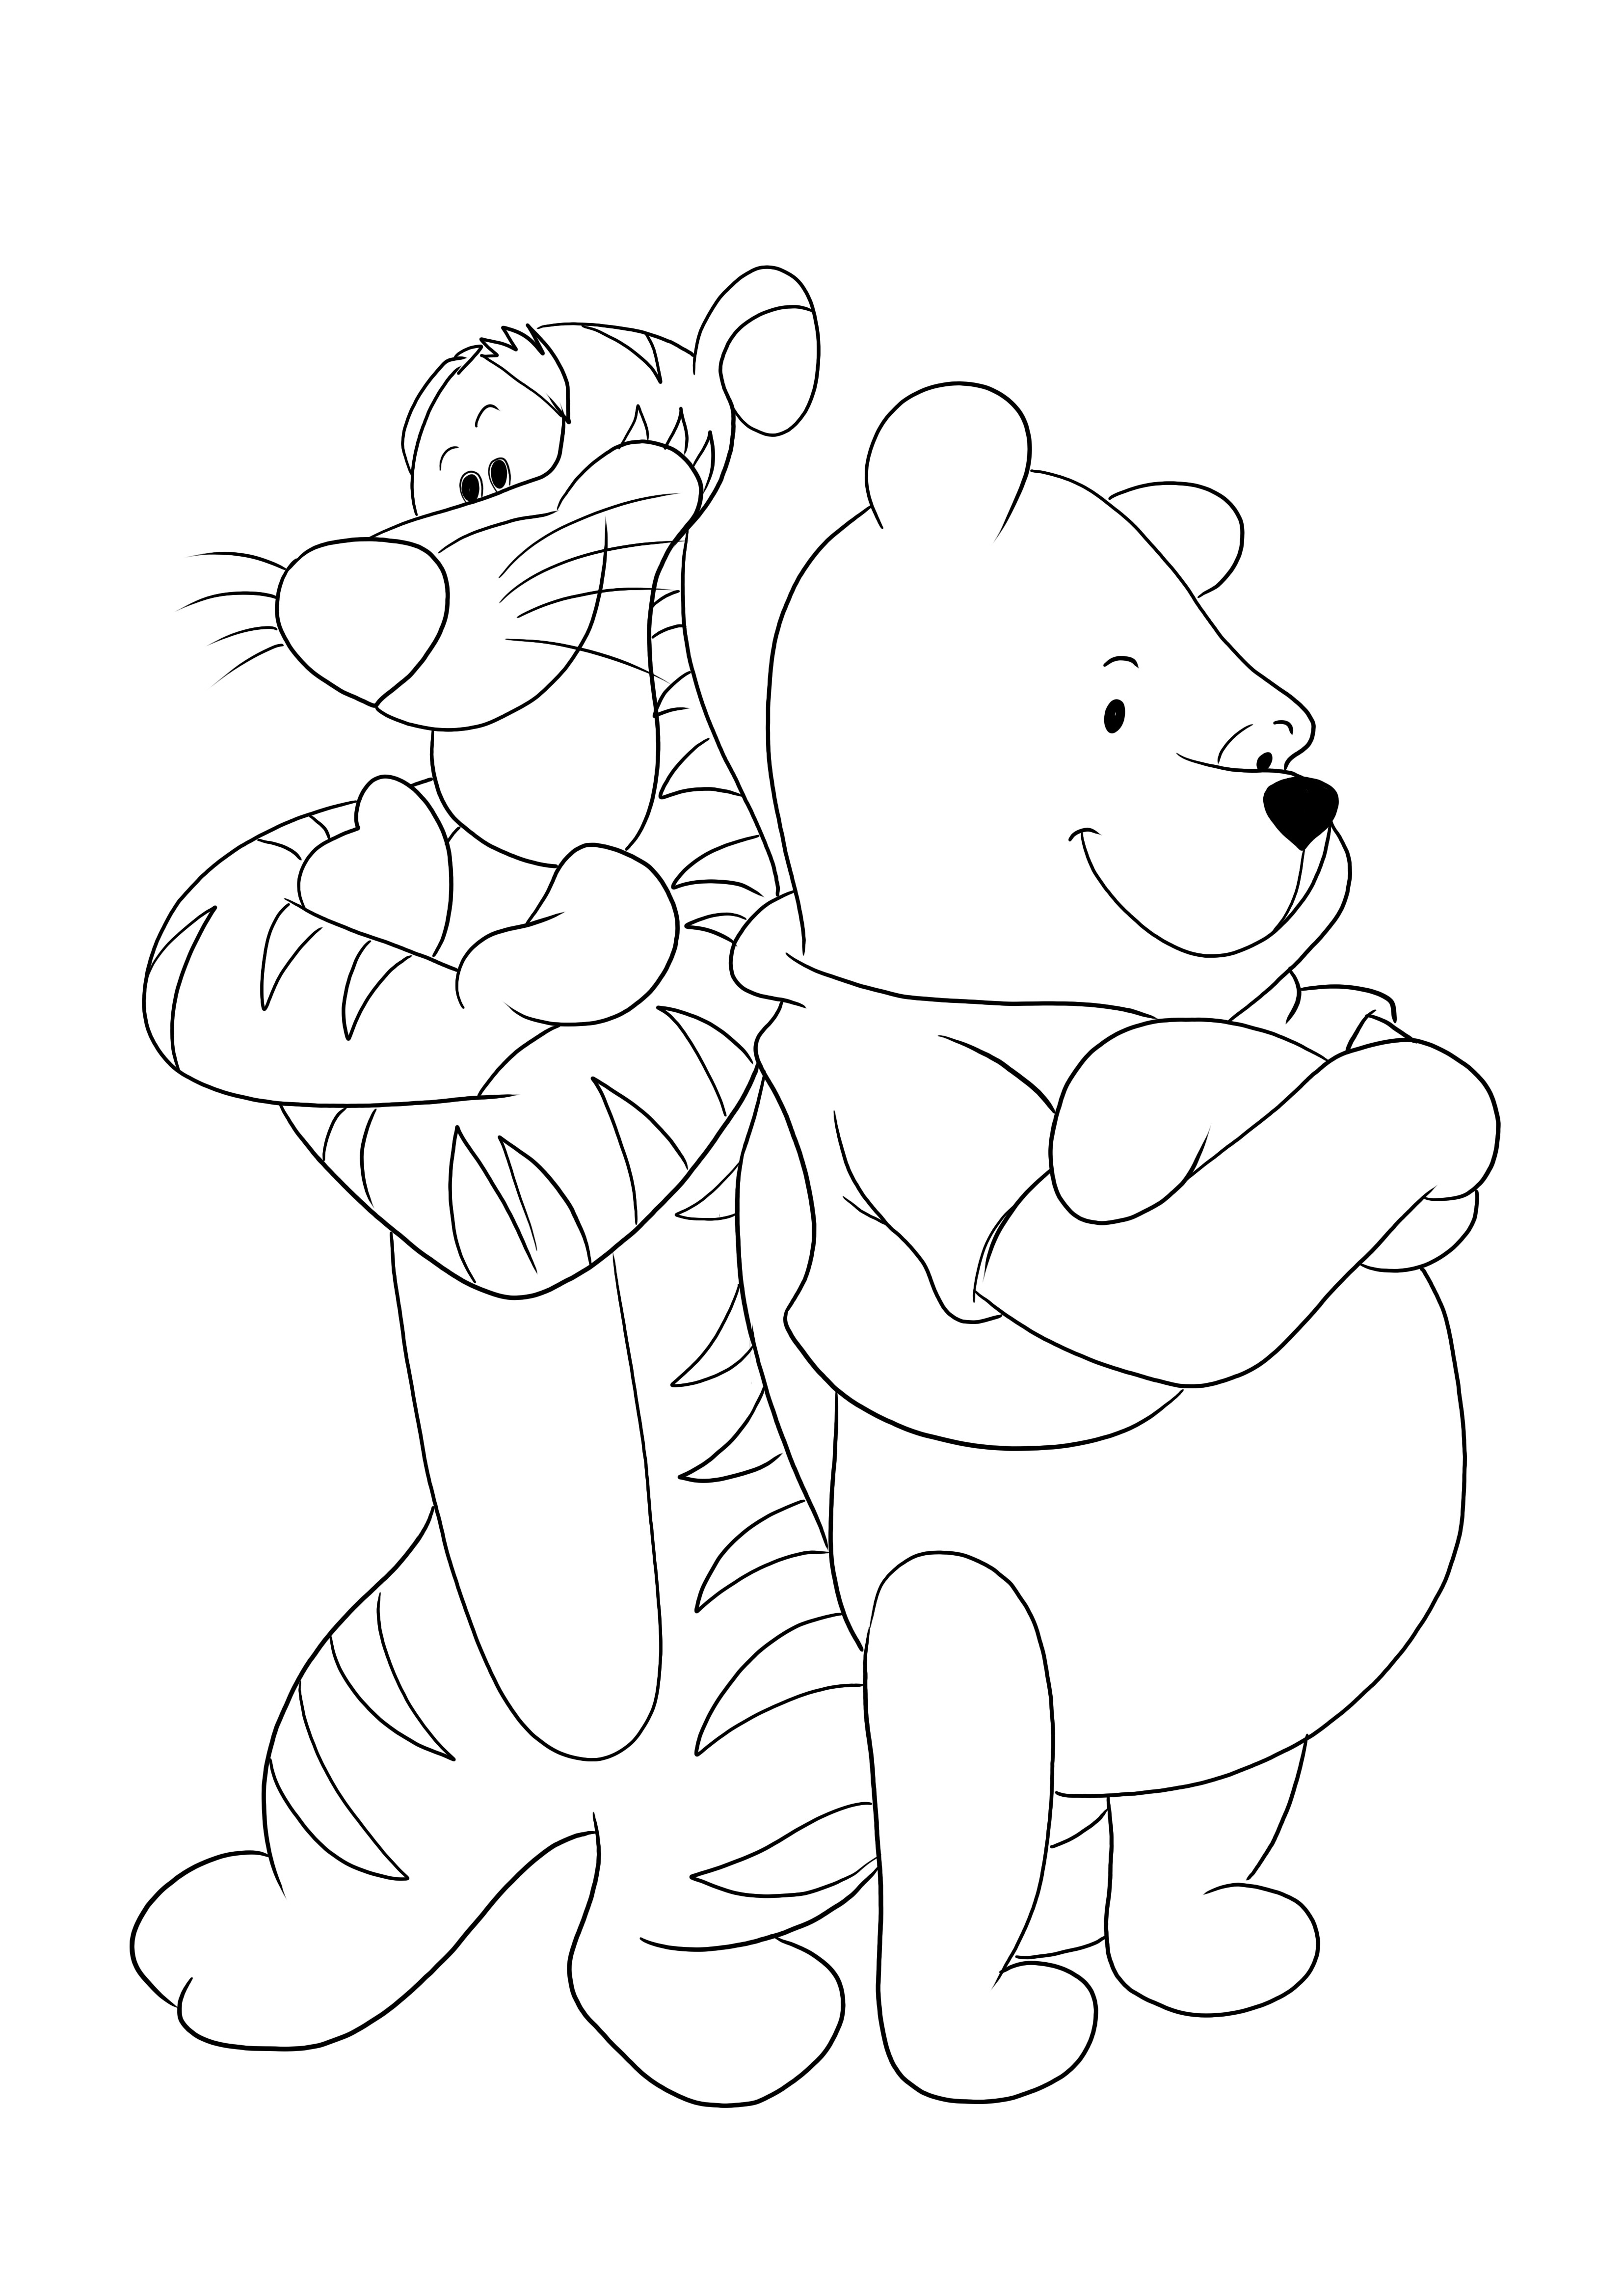 Tigris és Winnie keresztbe tett karja – egy szórakoztató színező oldal a gyerekek számára, akik ingyenesen nyomtathatnak és színezhetnek